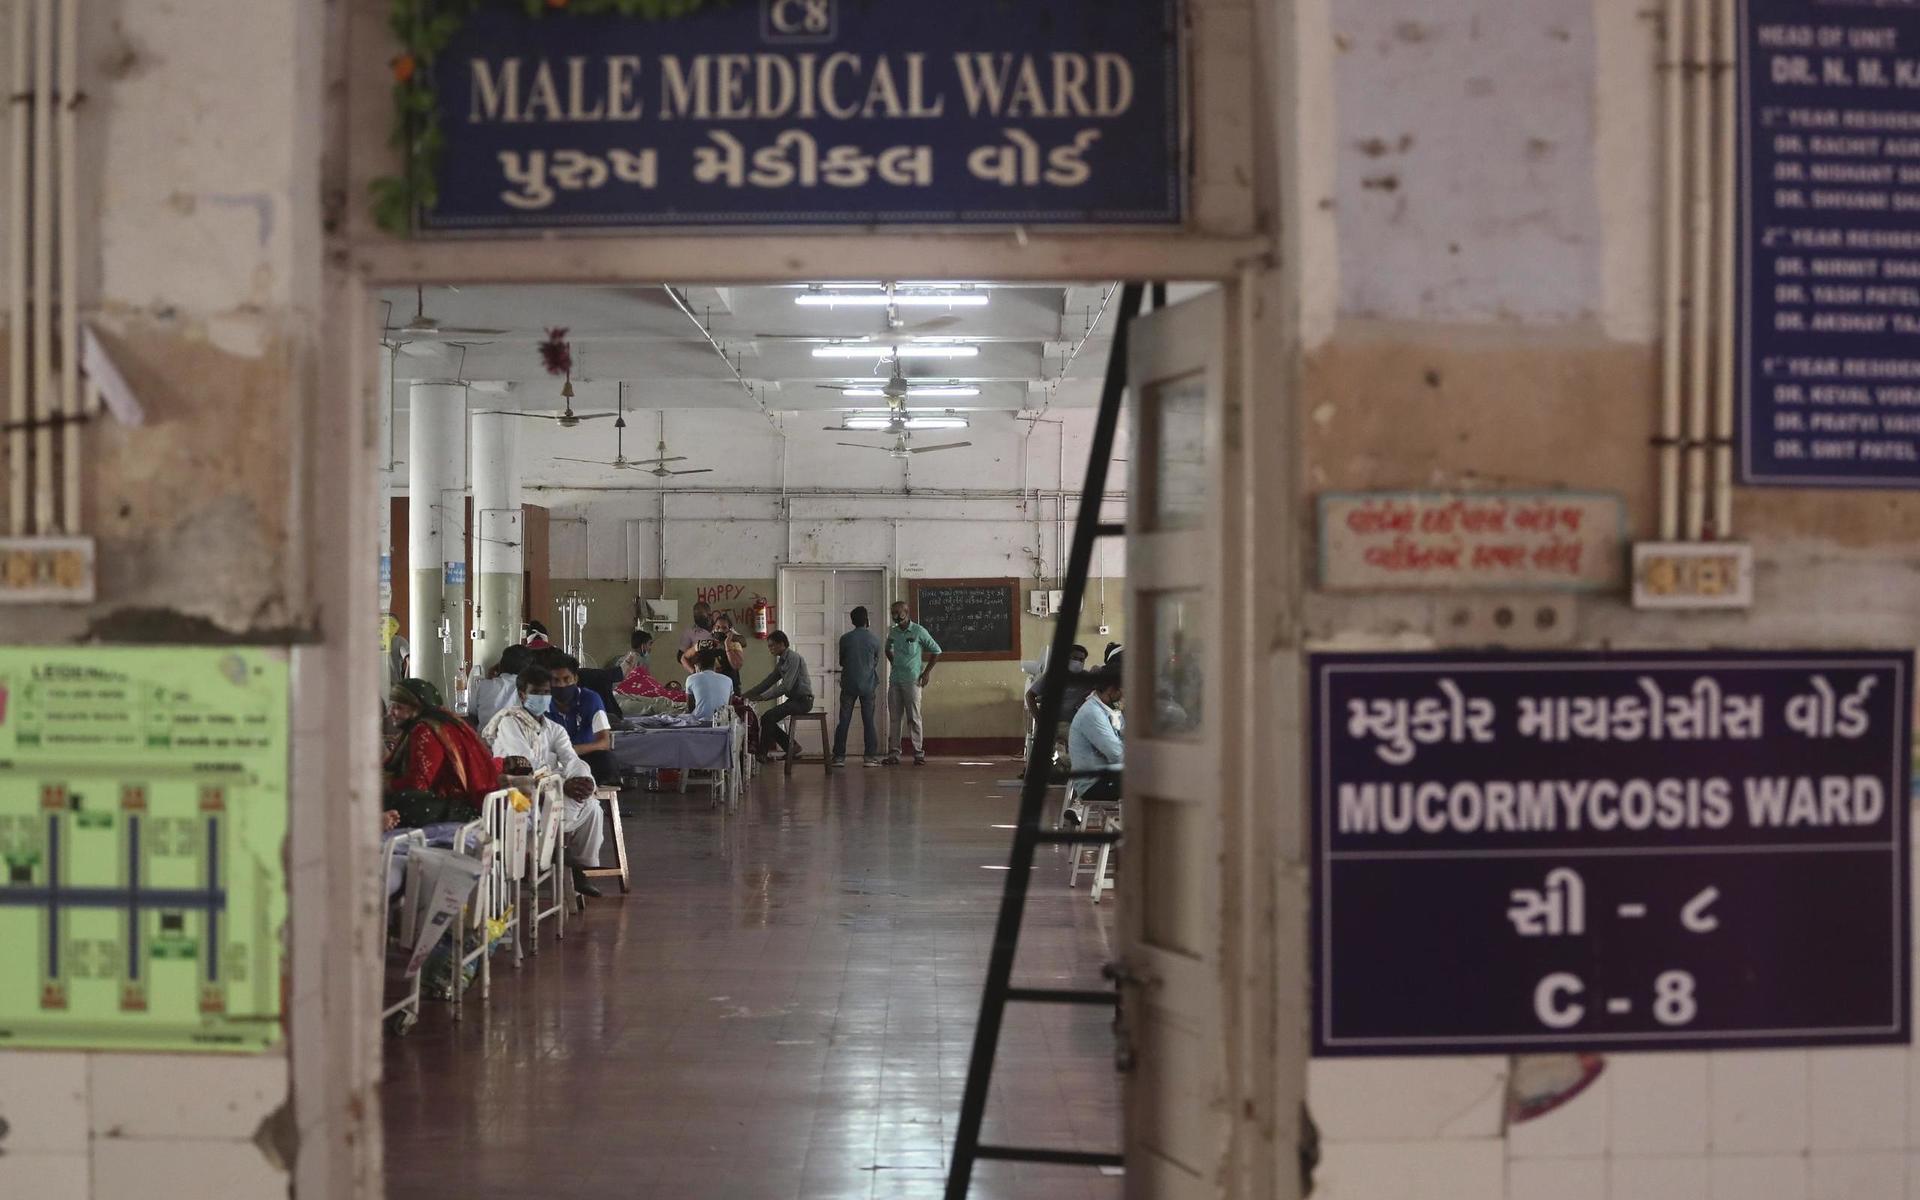 Spridningen av de olika svampinfektionerna sker parallellt med en svår tredje smittovåg i Indien. På måndagen passerade antalet döda i coronaviruset 300 000 personer. Smittspridningen har de senaste veckorna eskalerat och sjukvården är på många håll svårt överbelastad med brist på syrgas och andra viktiga läkemedel.